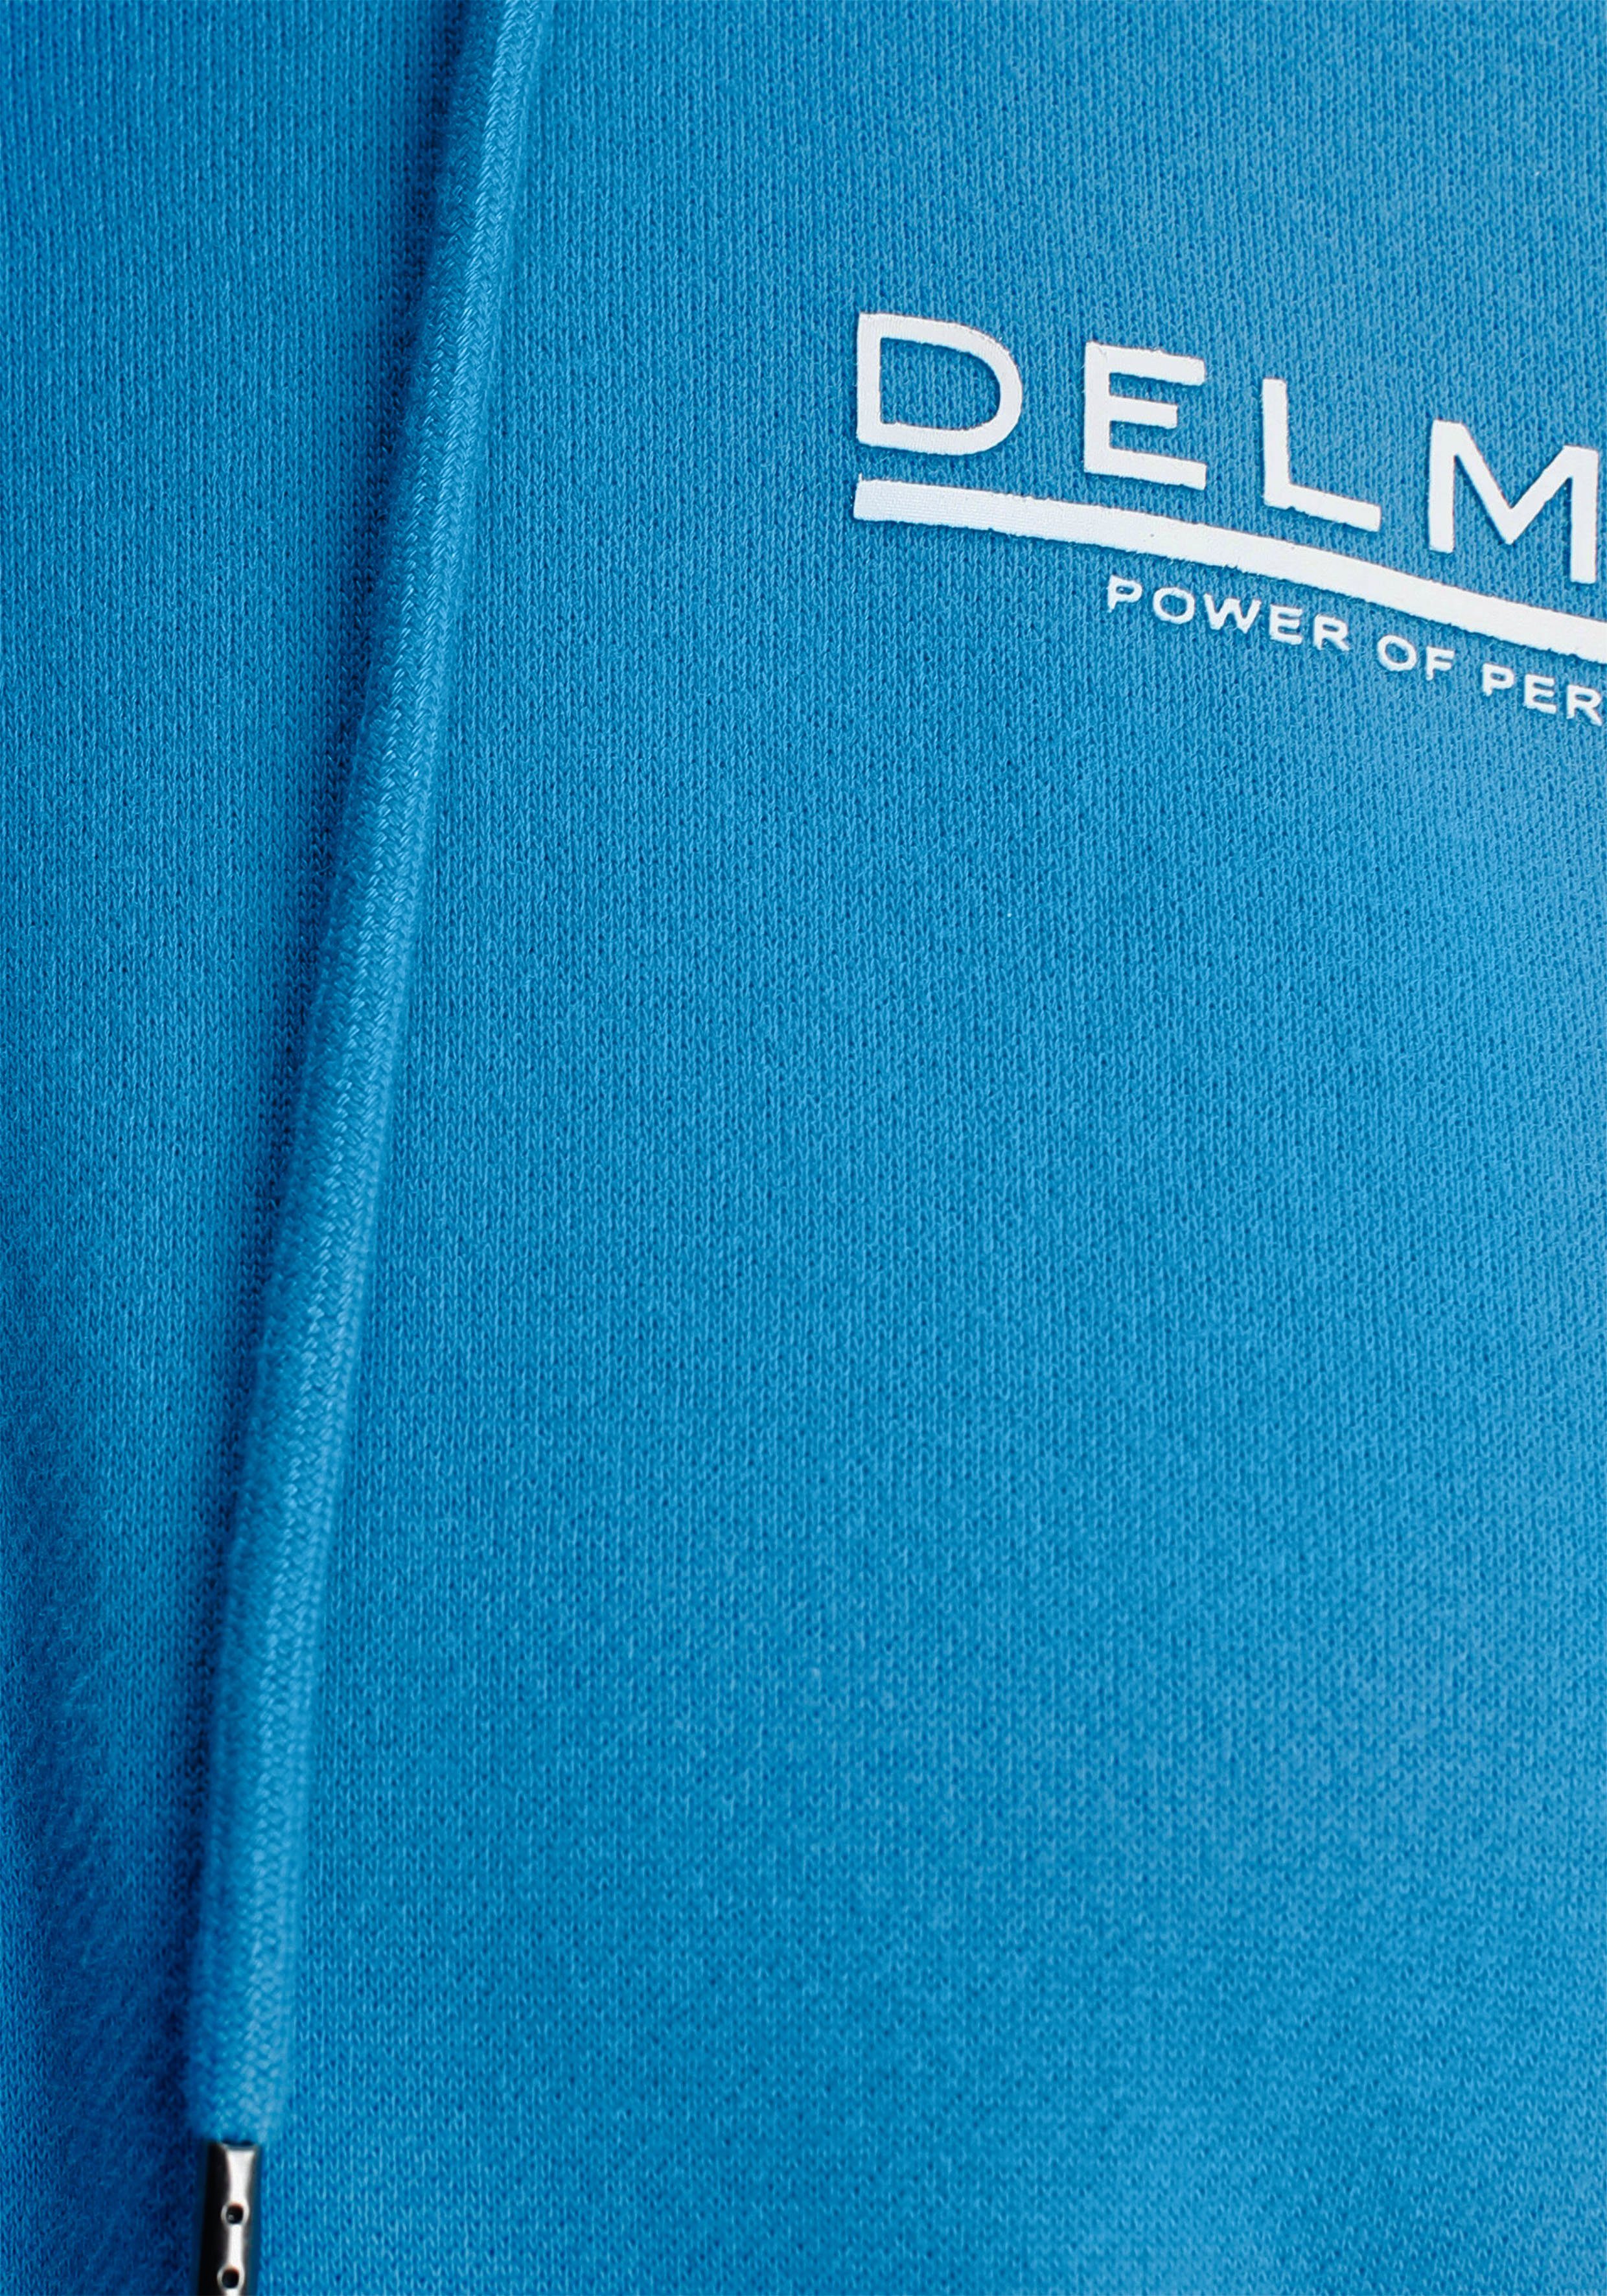 Kapuzensweatshirt blau NEUE mit Reissverschluss DELMAO - MARKE!